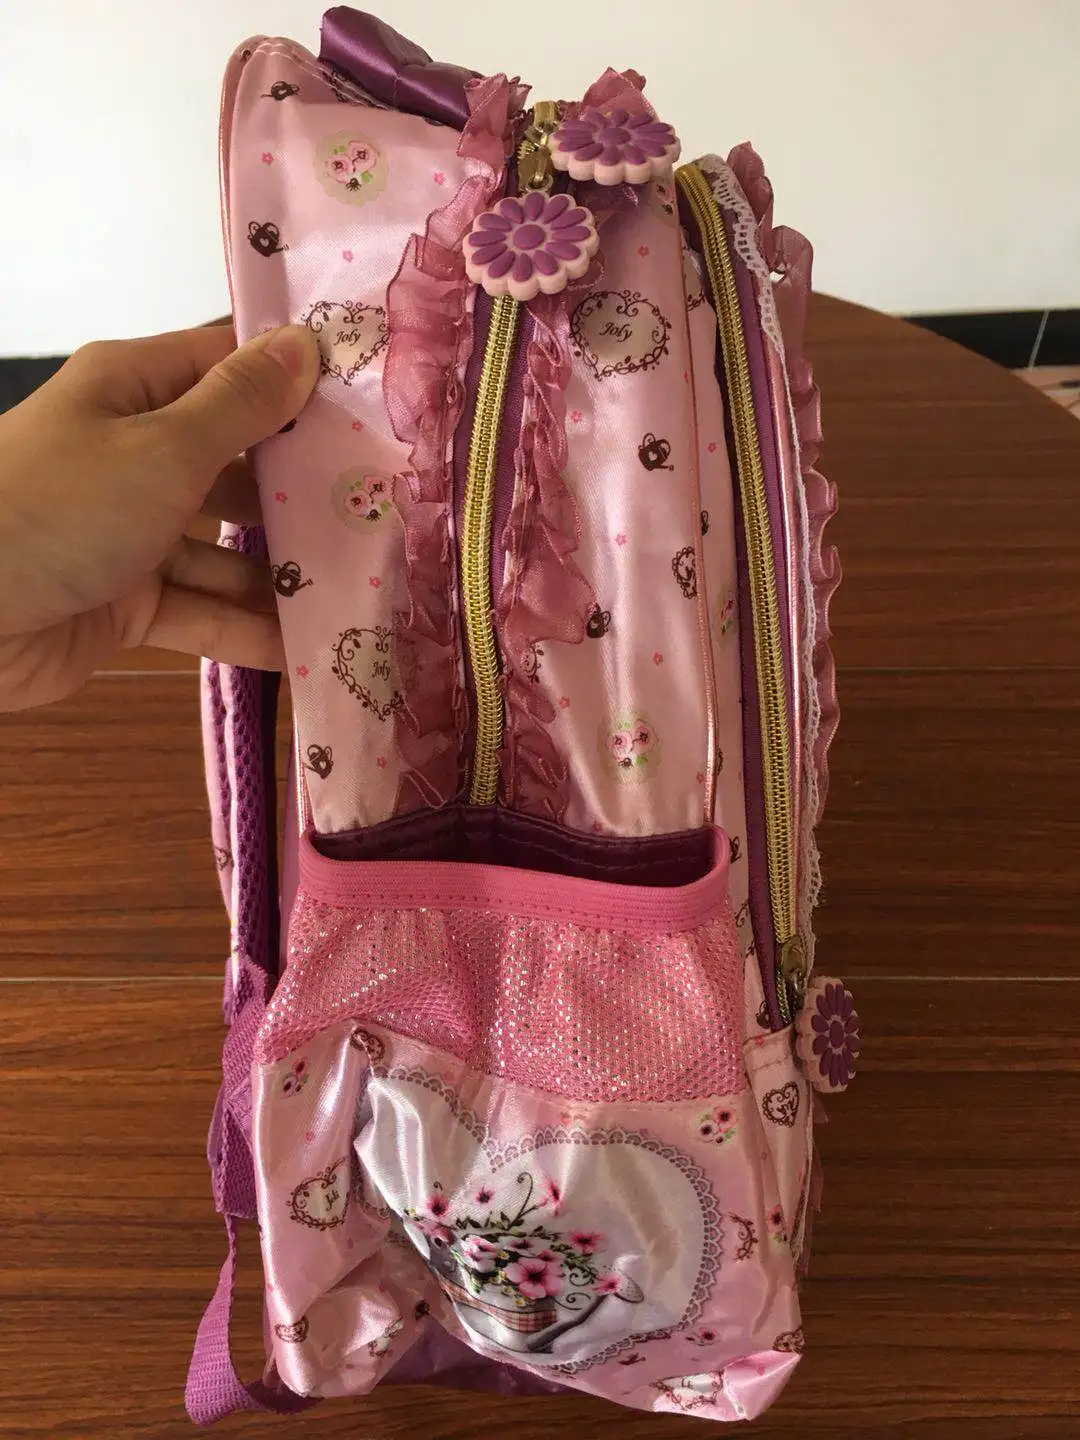 JOLY,, начальная сумка для книг, школьная сумка с цветком, школьные сумки для девочек, Детский рюкзак, Mochila Infantil sac a dos enfant